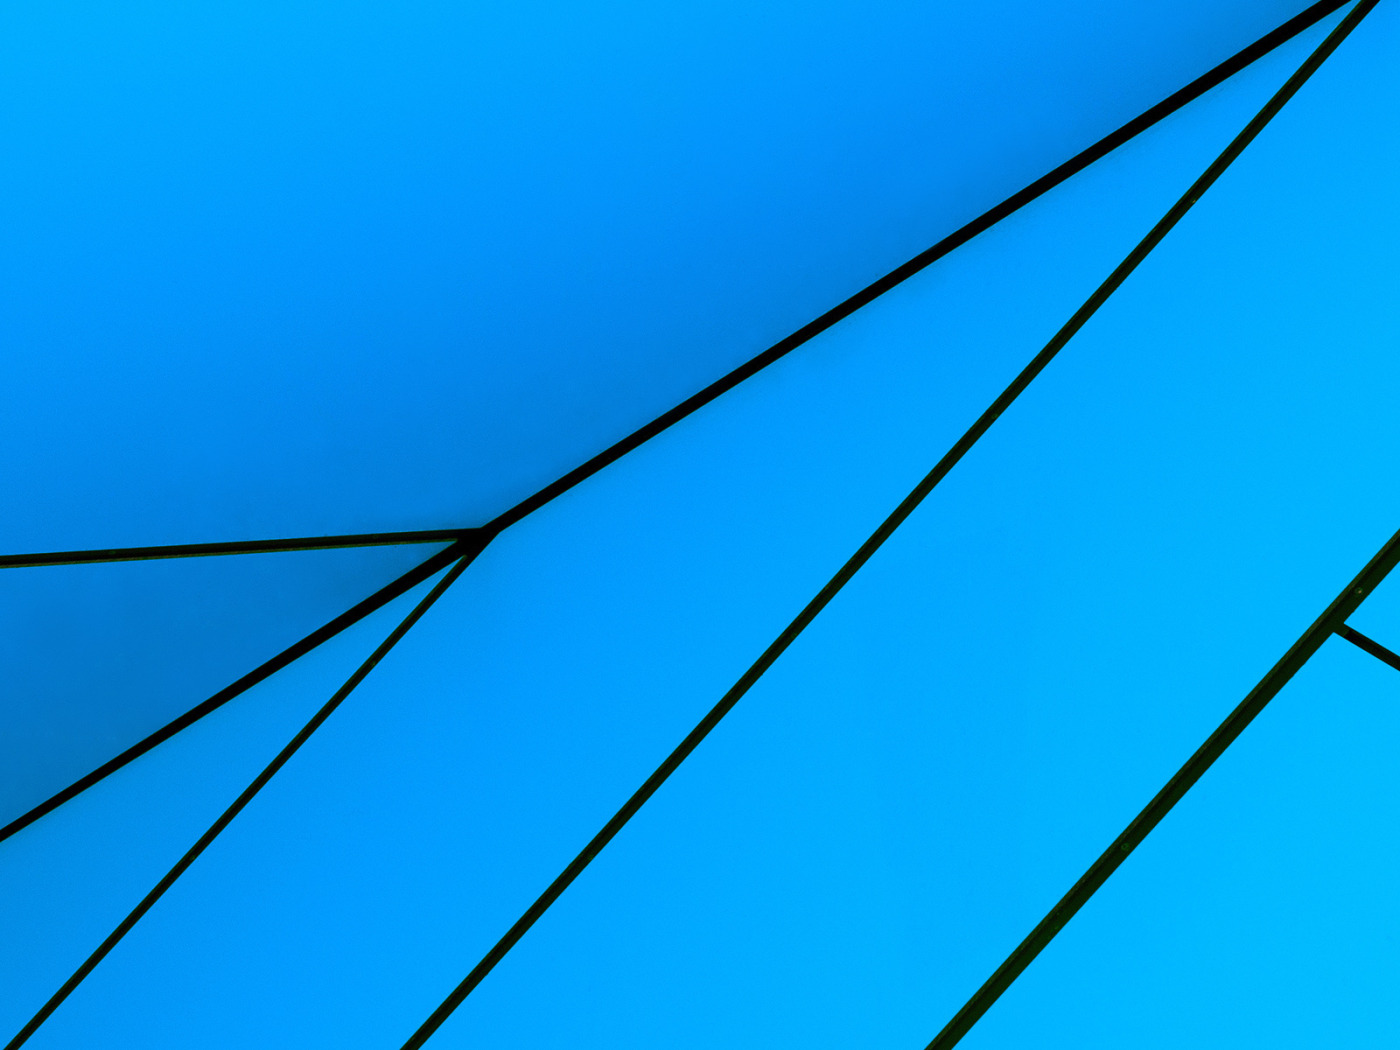 Синяя линия синих линий 5 0. Win 8.1 рабочий стол. Windows 10 Technical Preview. Голубые стрелки у файлов виндовс 10. Защитник виндовс логотип.